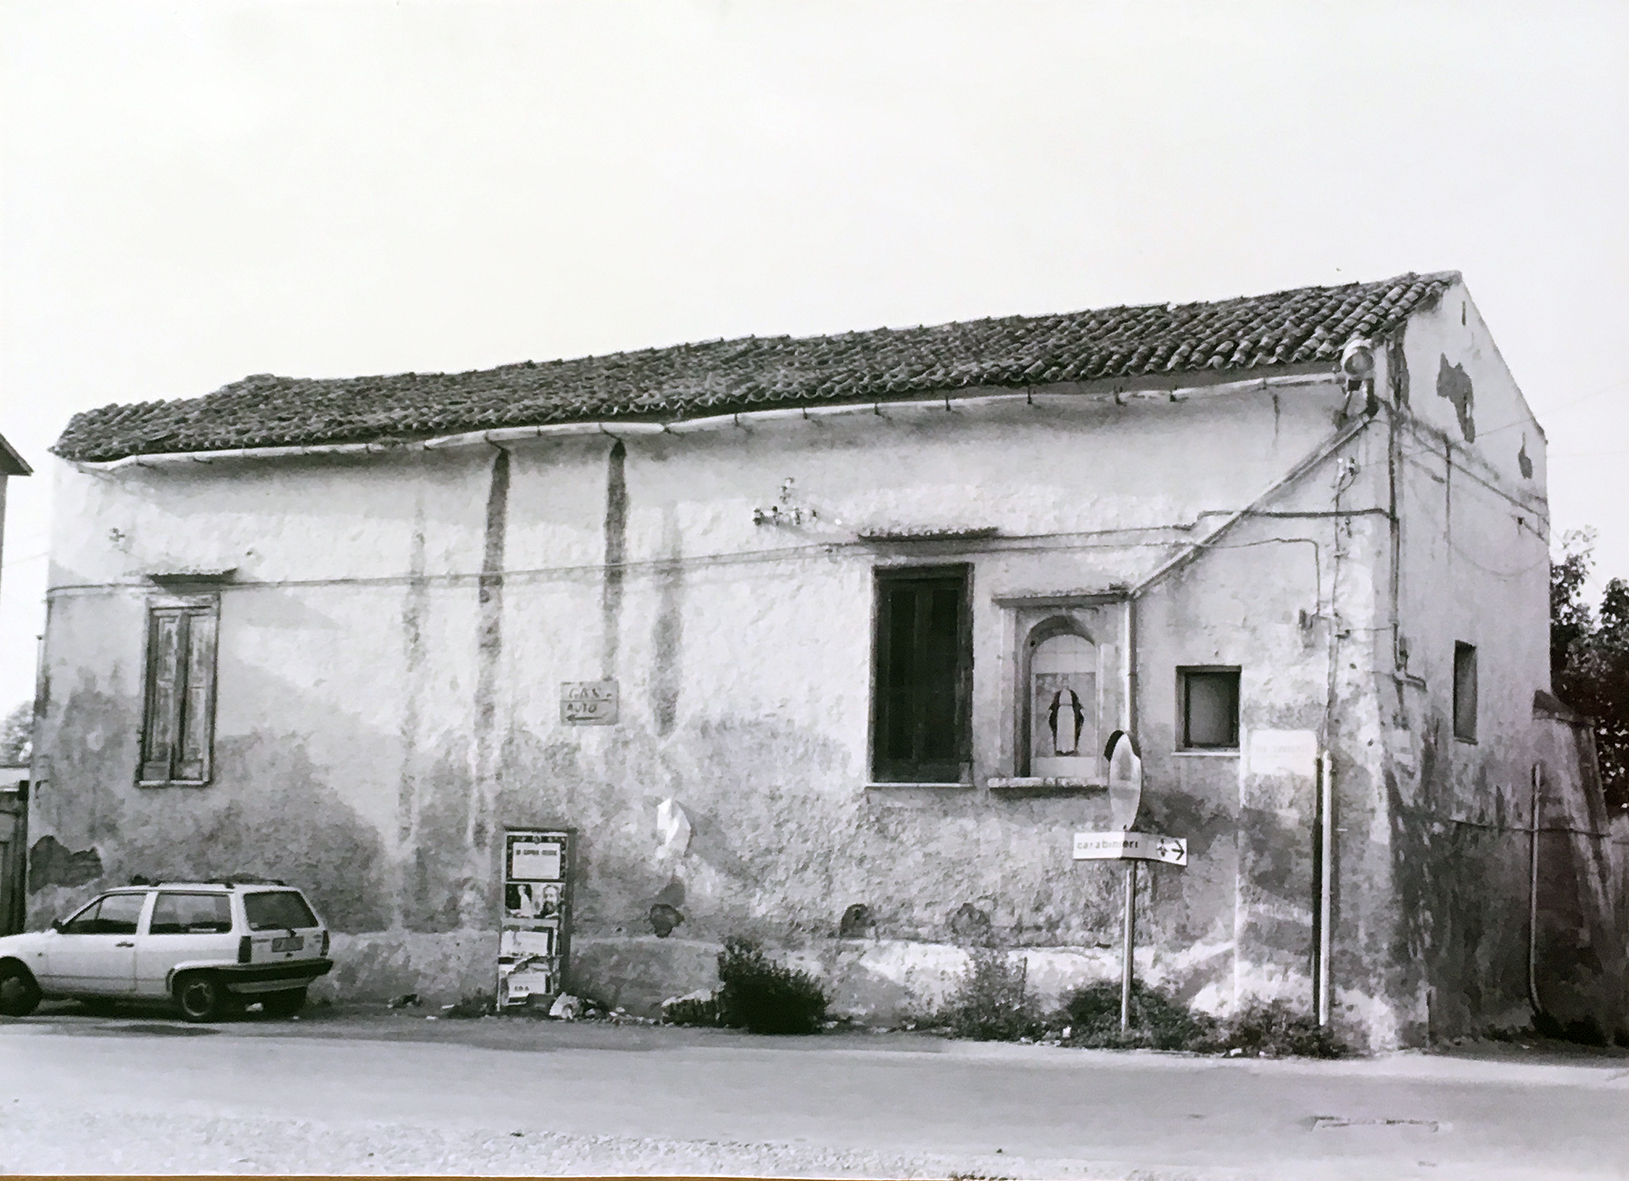 Residenza rurale del '600 (masseria) - San Felice a Cancello (CE) 